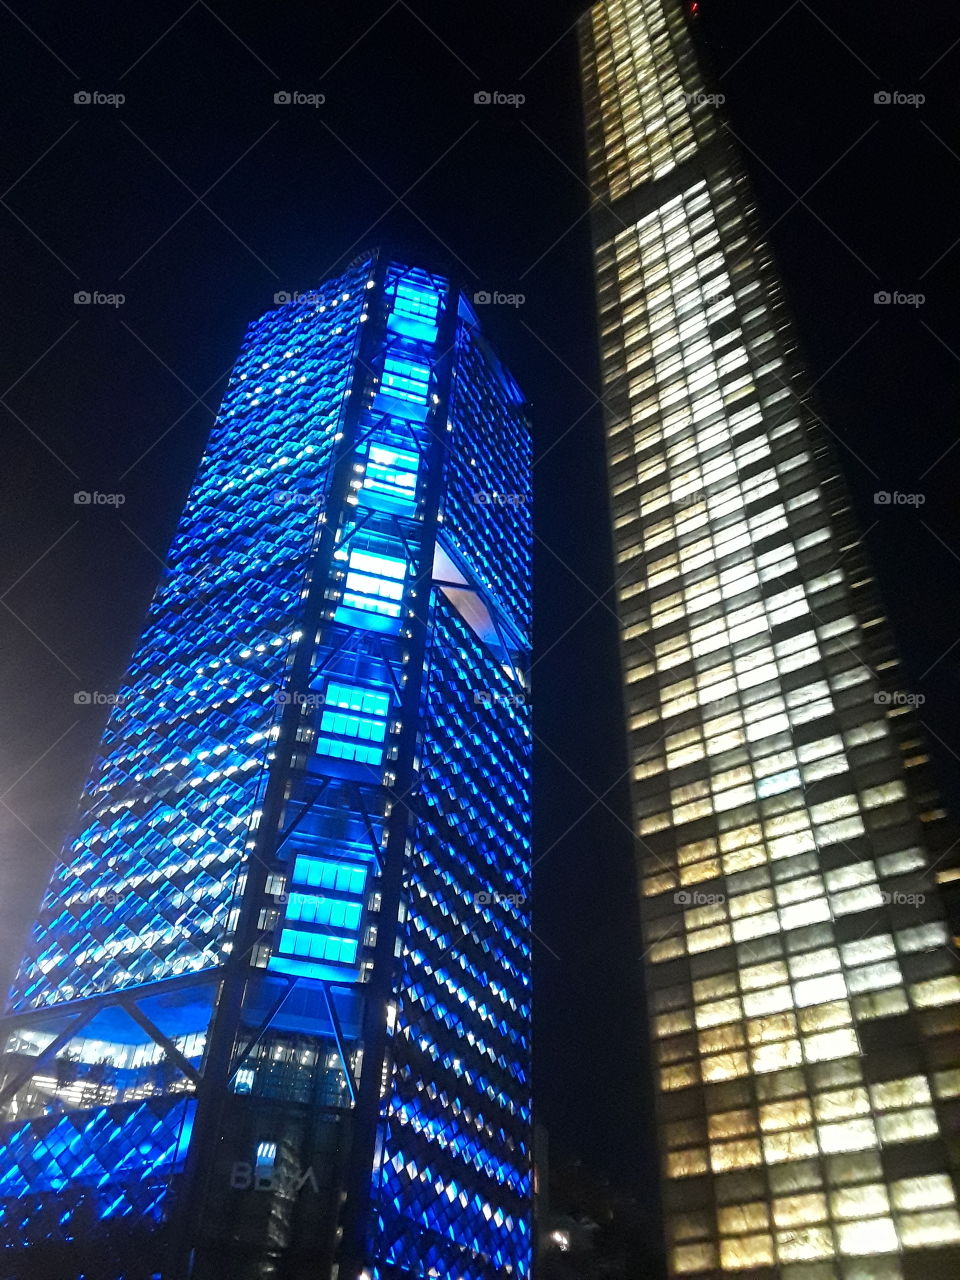 edificios torres con luz iluminadas de color blanco y azul.. de fondo negro en la ciudad